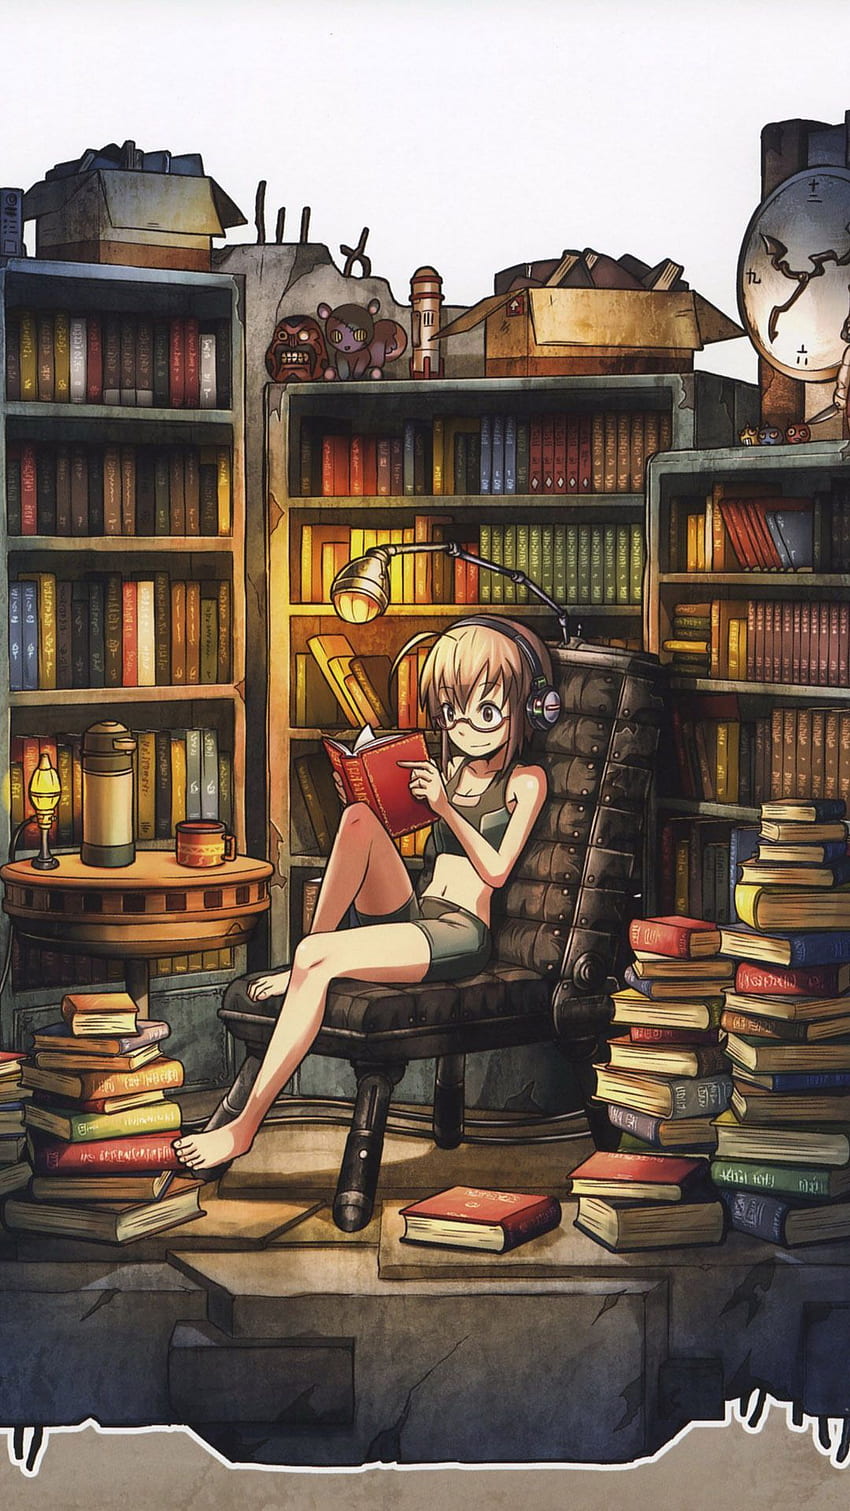 Steam WorkshopAnime girl reading book